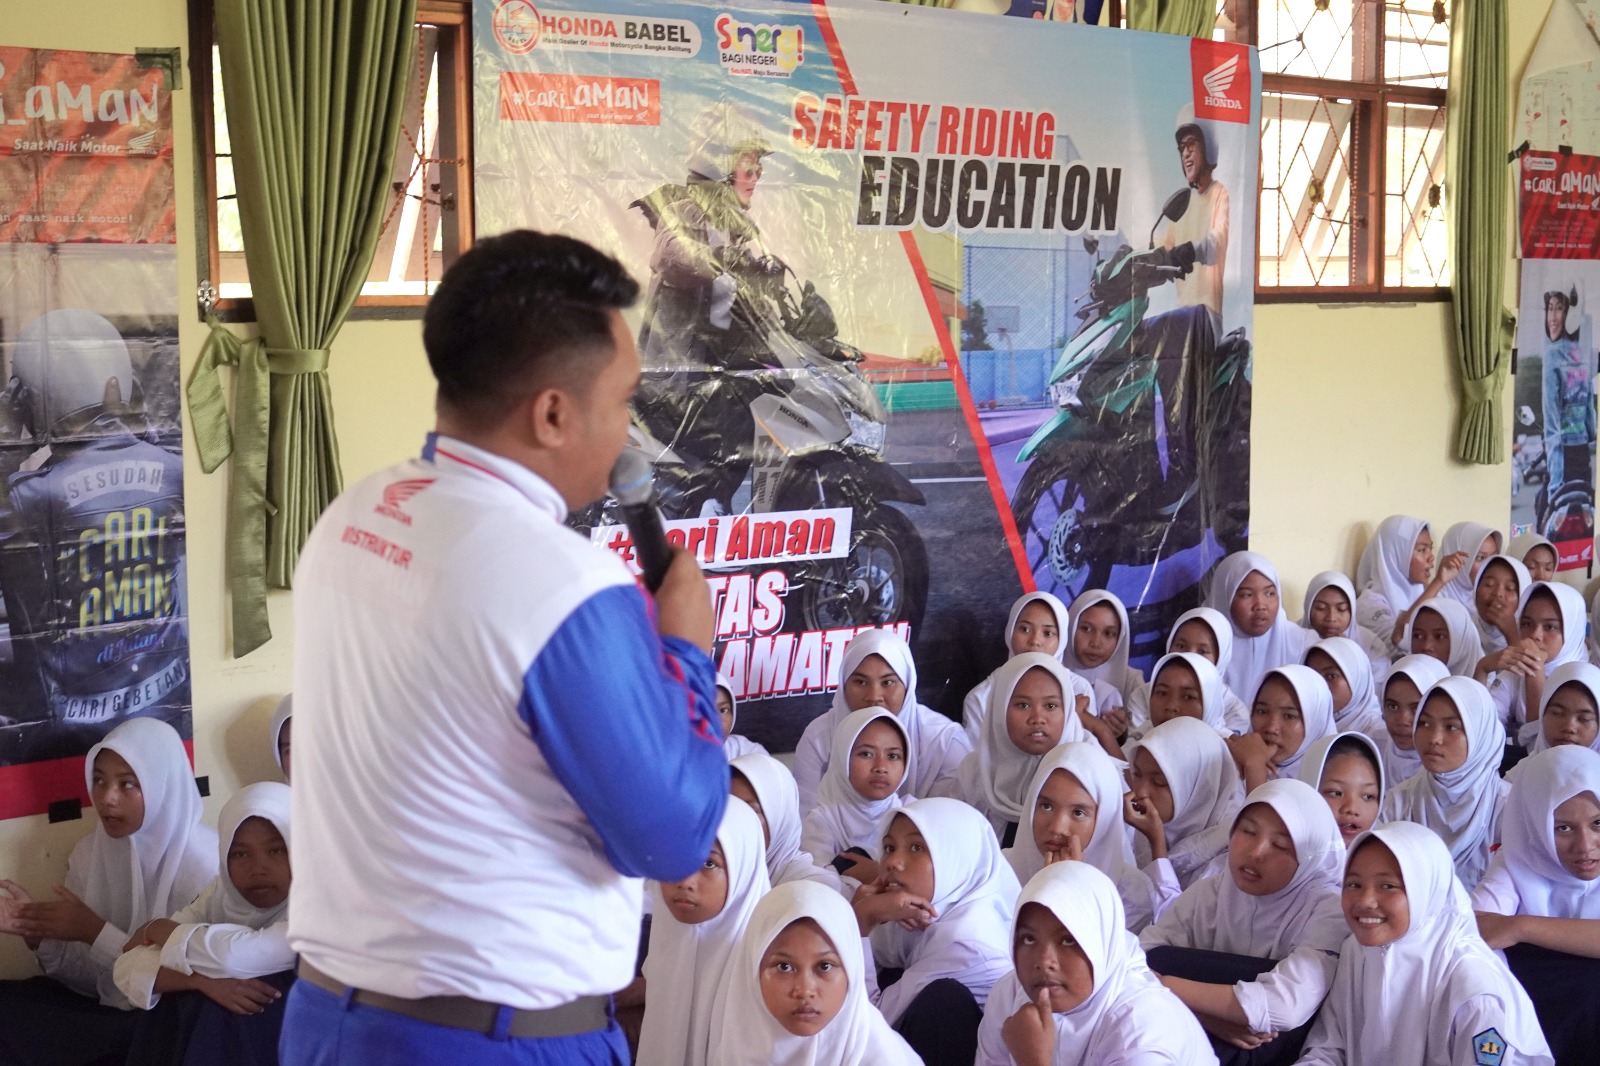 Kolaborasi Honda Babel Bersama Polantas Belitung, Berikan Edukasi Keselamatan Berkendara di SMP 5 Membalong 